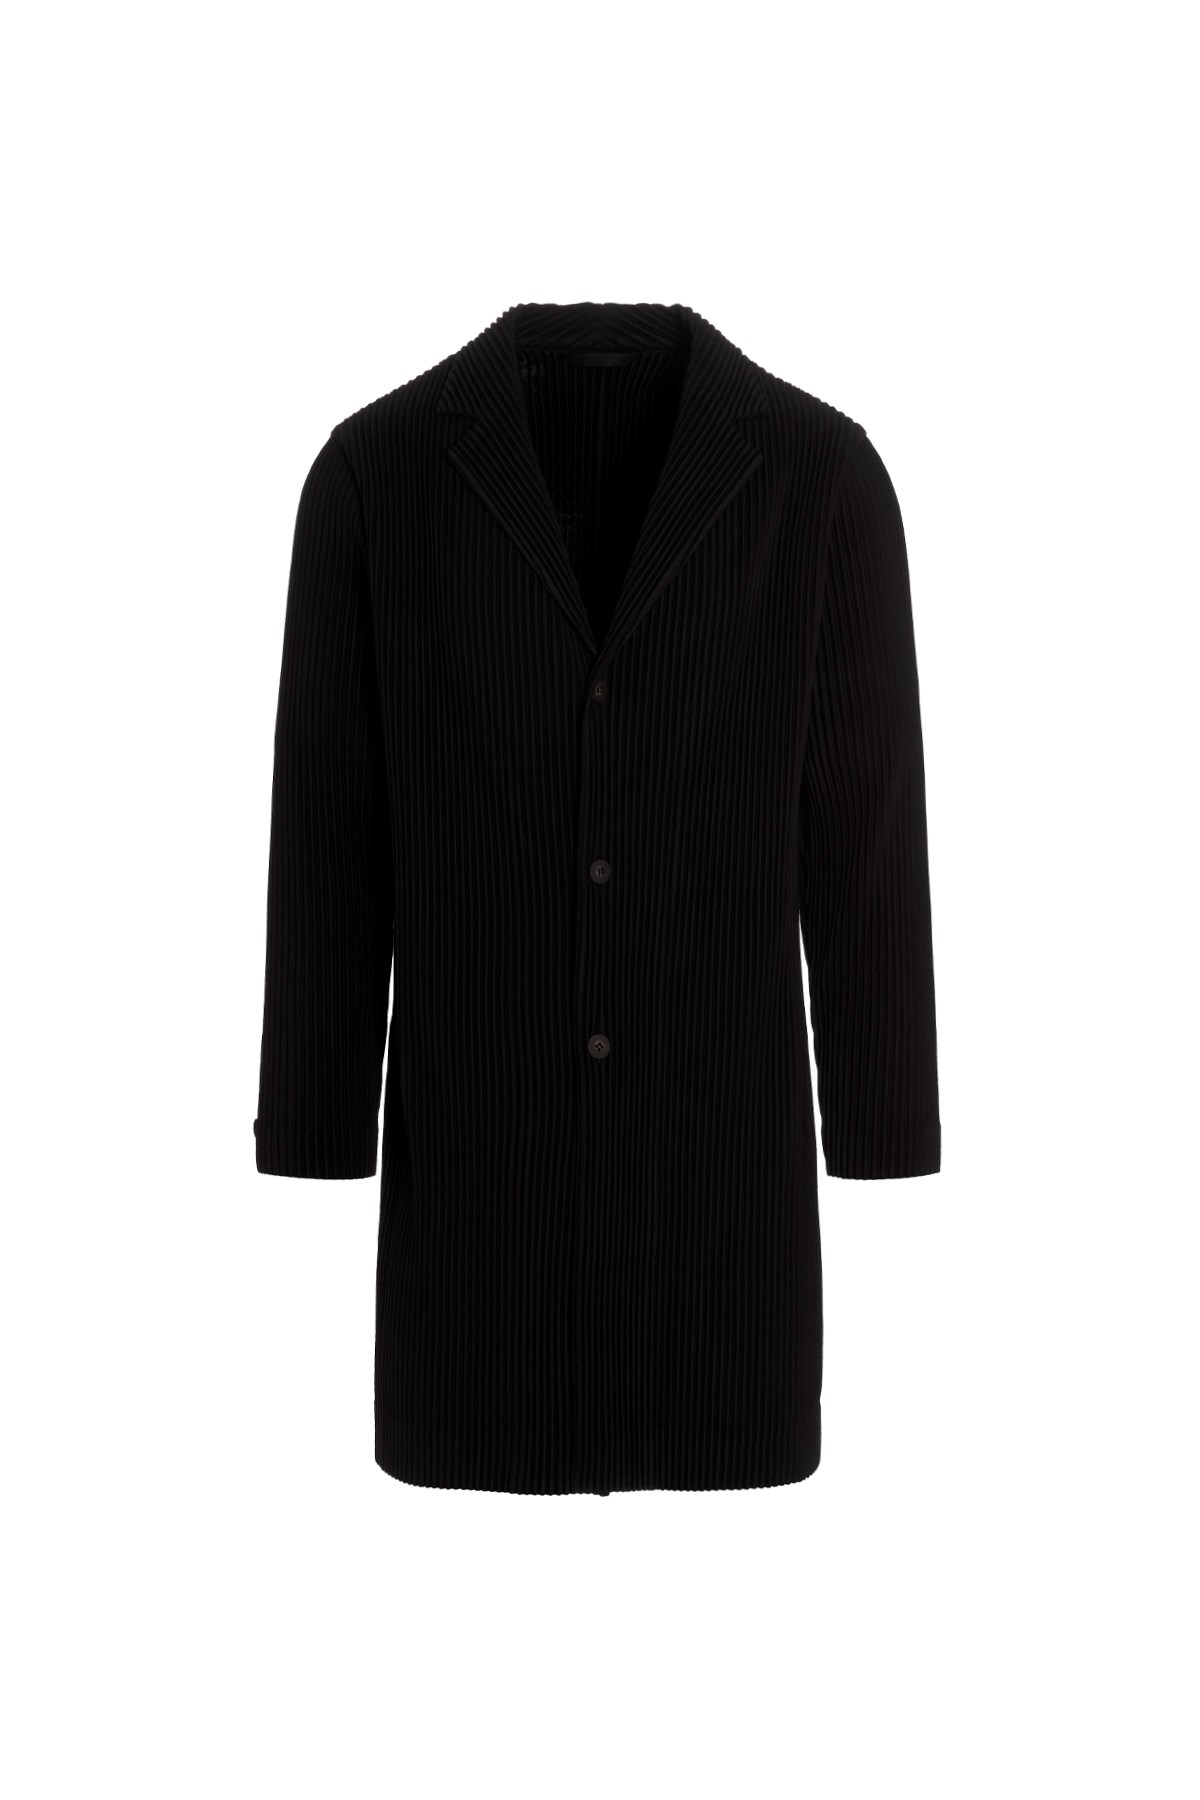 HOMME PLISSE' ISSEY MIYAKE ‘Basics’ Long Blazer Jacket